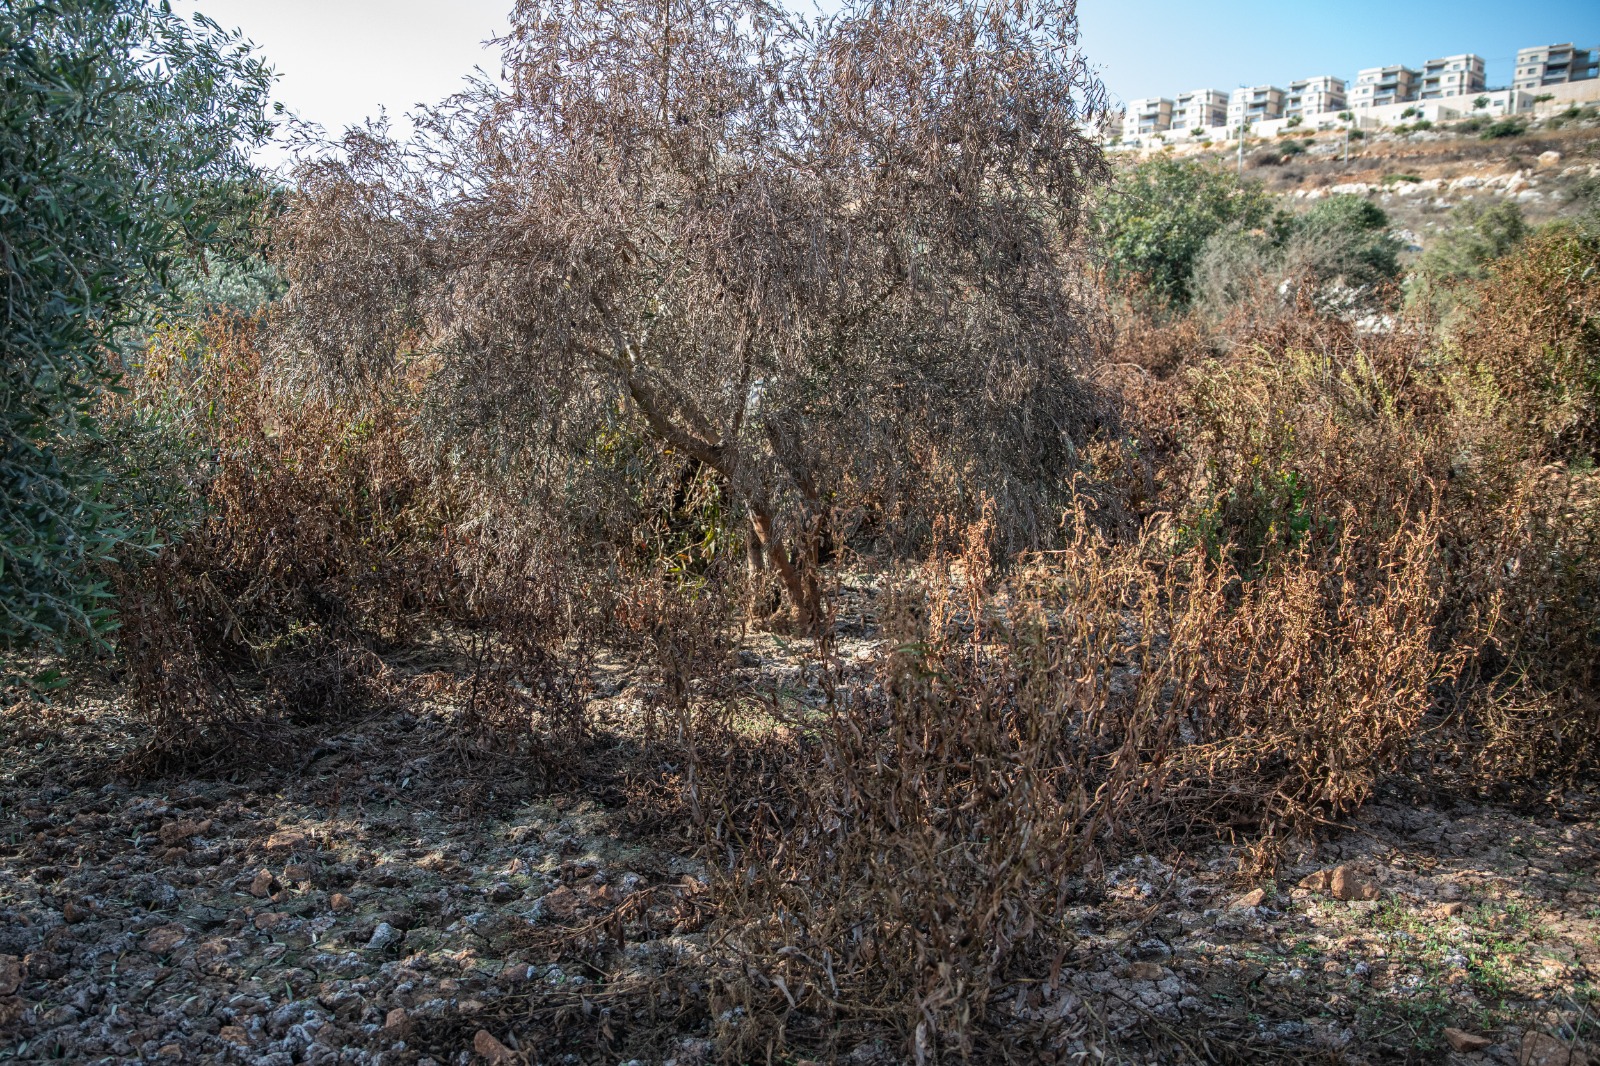 גידולים פלסטיניים נפגעים משפכים מהתנחלויות. מטע זיתים בברוקין, ליד התנחלות ברוכין (צילום: מתן גולן)